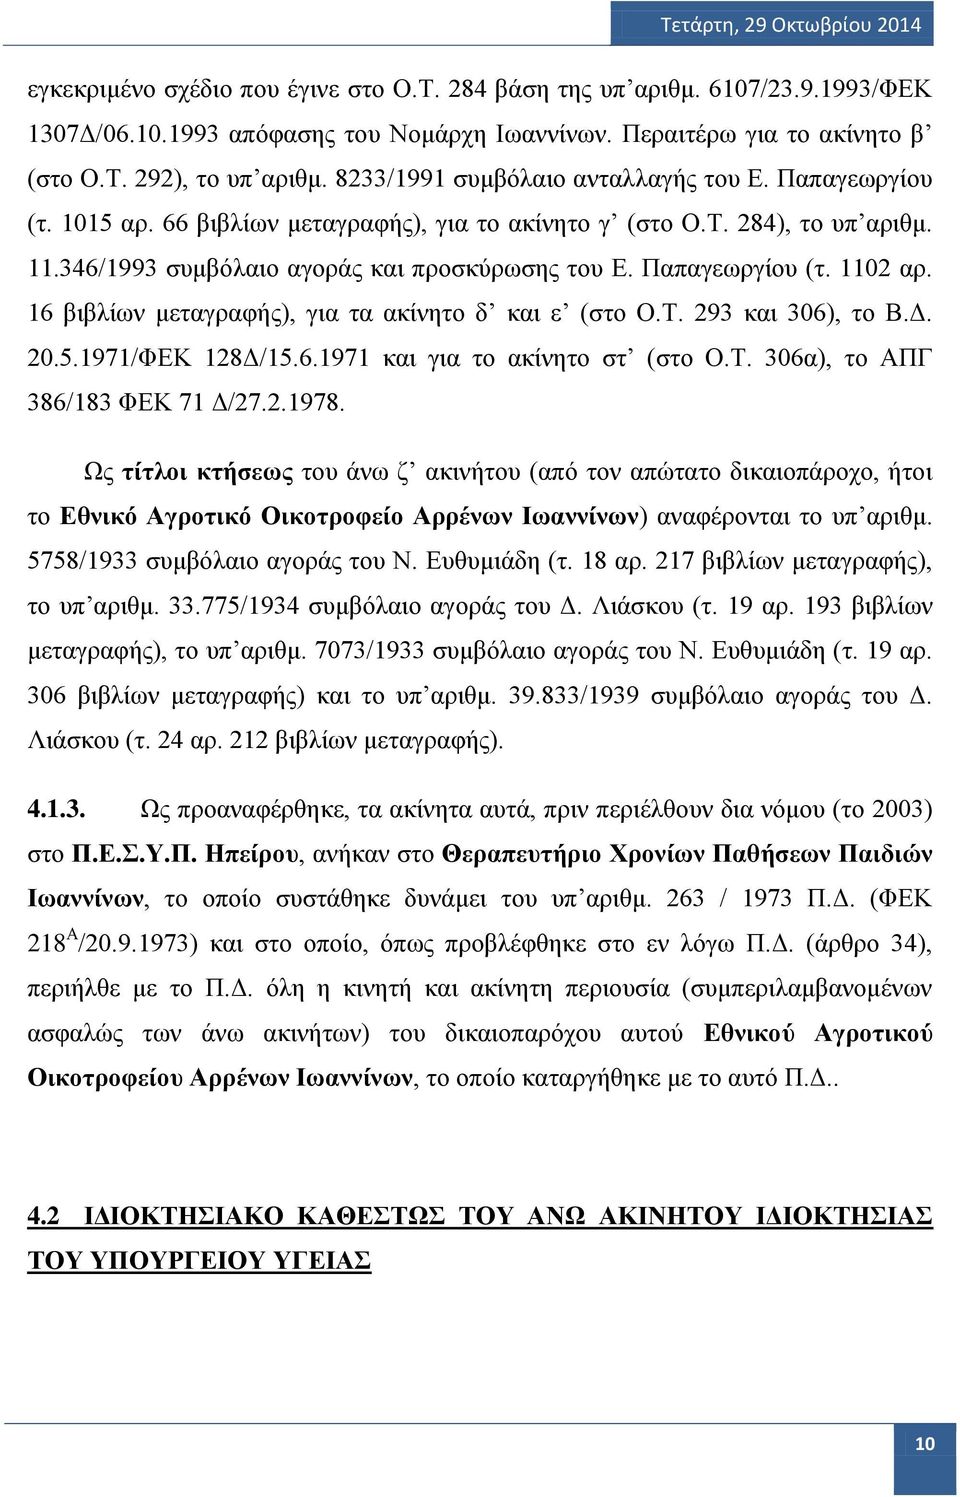 Παπαγεωργίου (τ. 1102 αρ. 16 βιβλίων μεταγραφής), για τα ακίνητο δ και ε (στο Ο.Τ. 293 και 306), το Β.Δ. 20.5.1971/ΦΕΚ 128Δ/15.6.1971 και για το ακίνητο στ (στο Ο.Τ. 306α), το ΑΠΓ 386/183 ΦΕΚ 71 Δ/27.